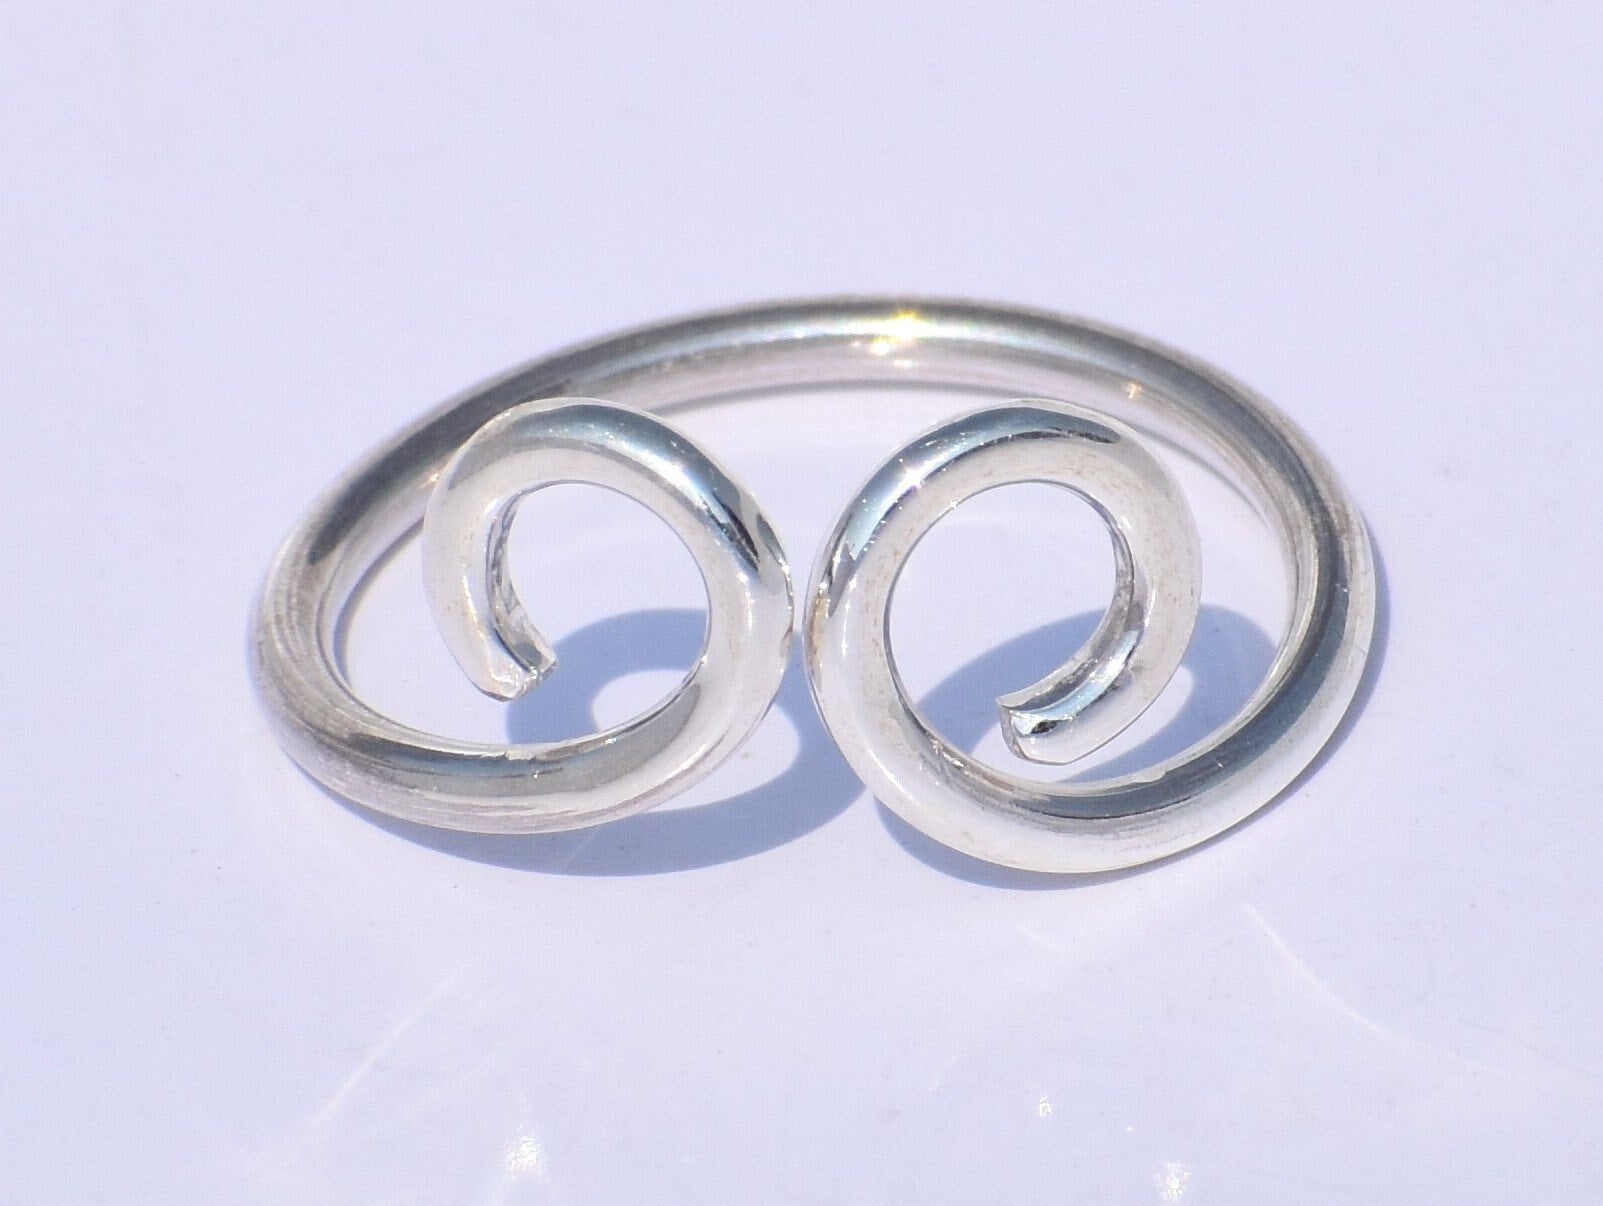 Spiral Ring, Frauen 925 Silber Handgefertigter Ring, Zappel Schaukel Ring, Verstell Barer Ring, Knöchel Ring, Zierlicher Ring von ParadisecraftStore